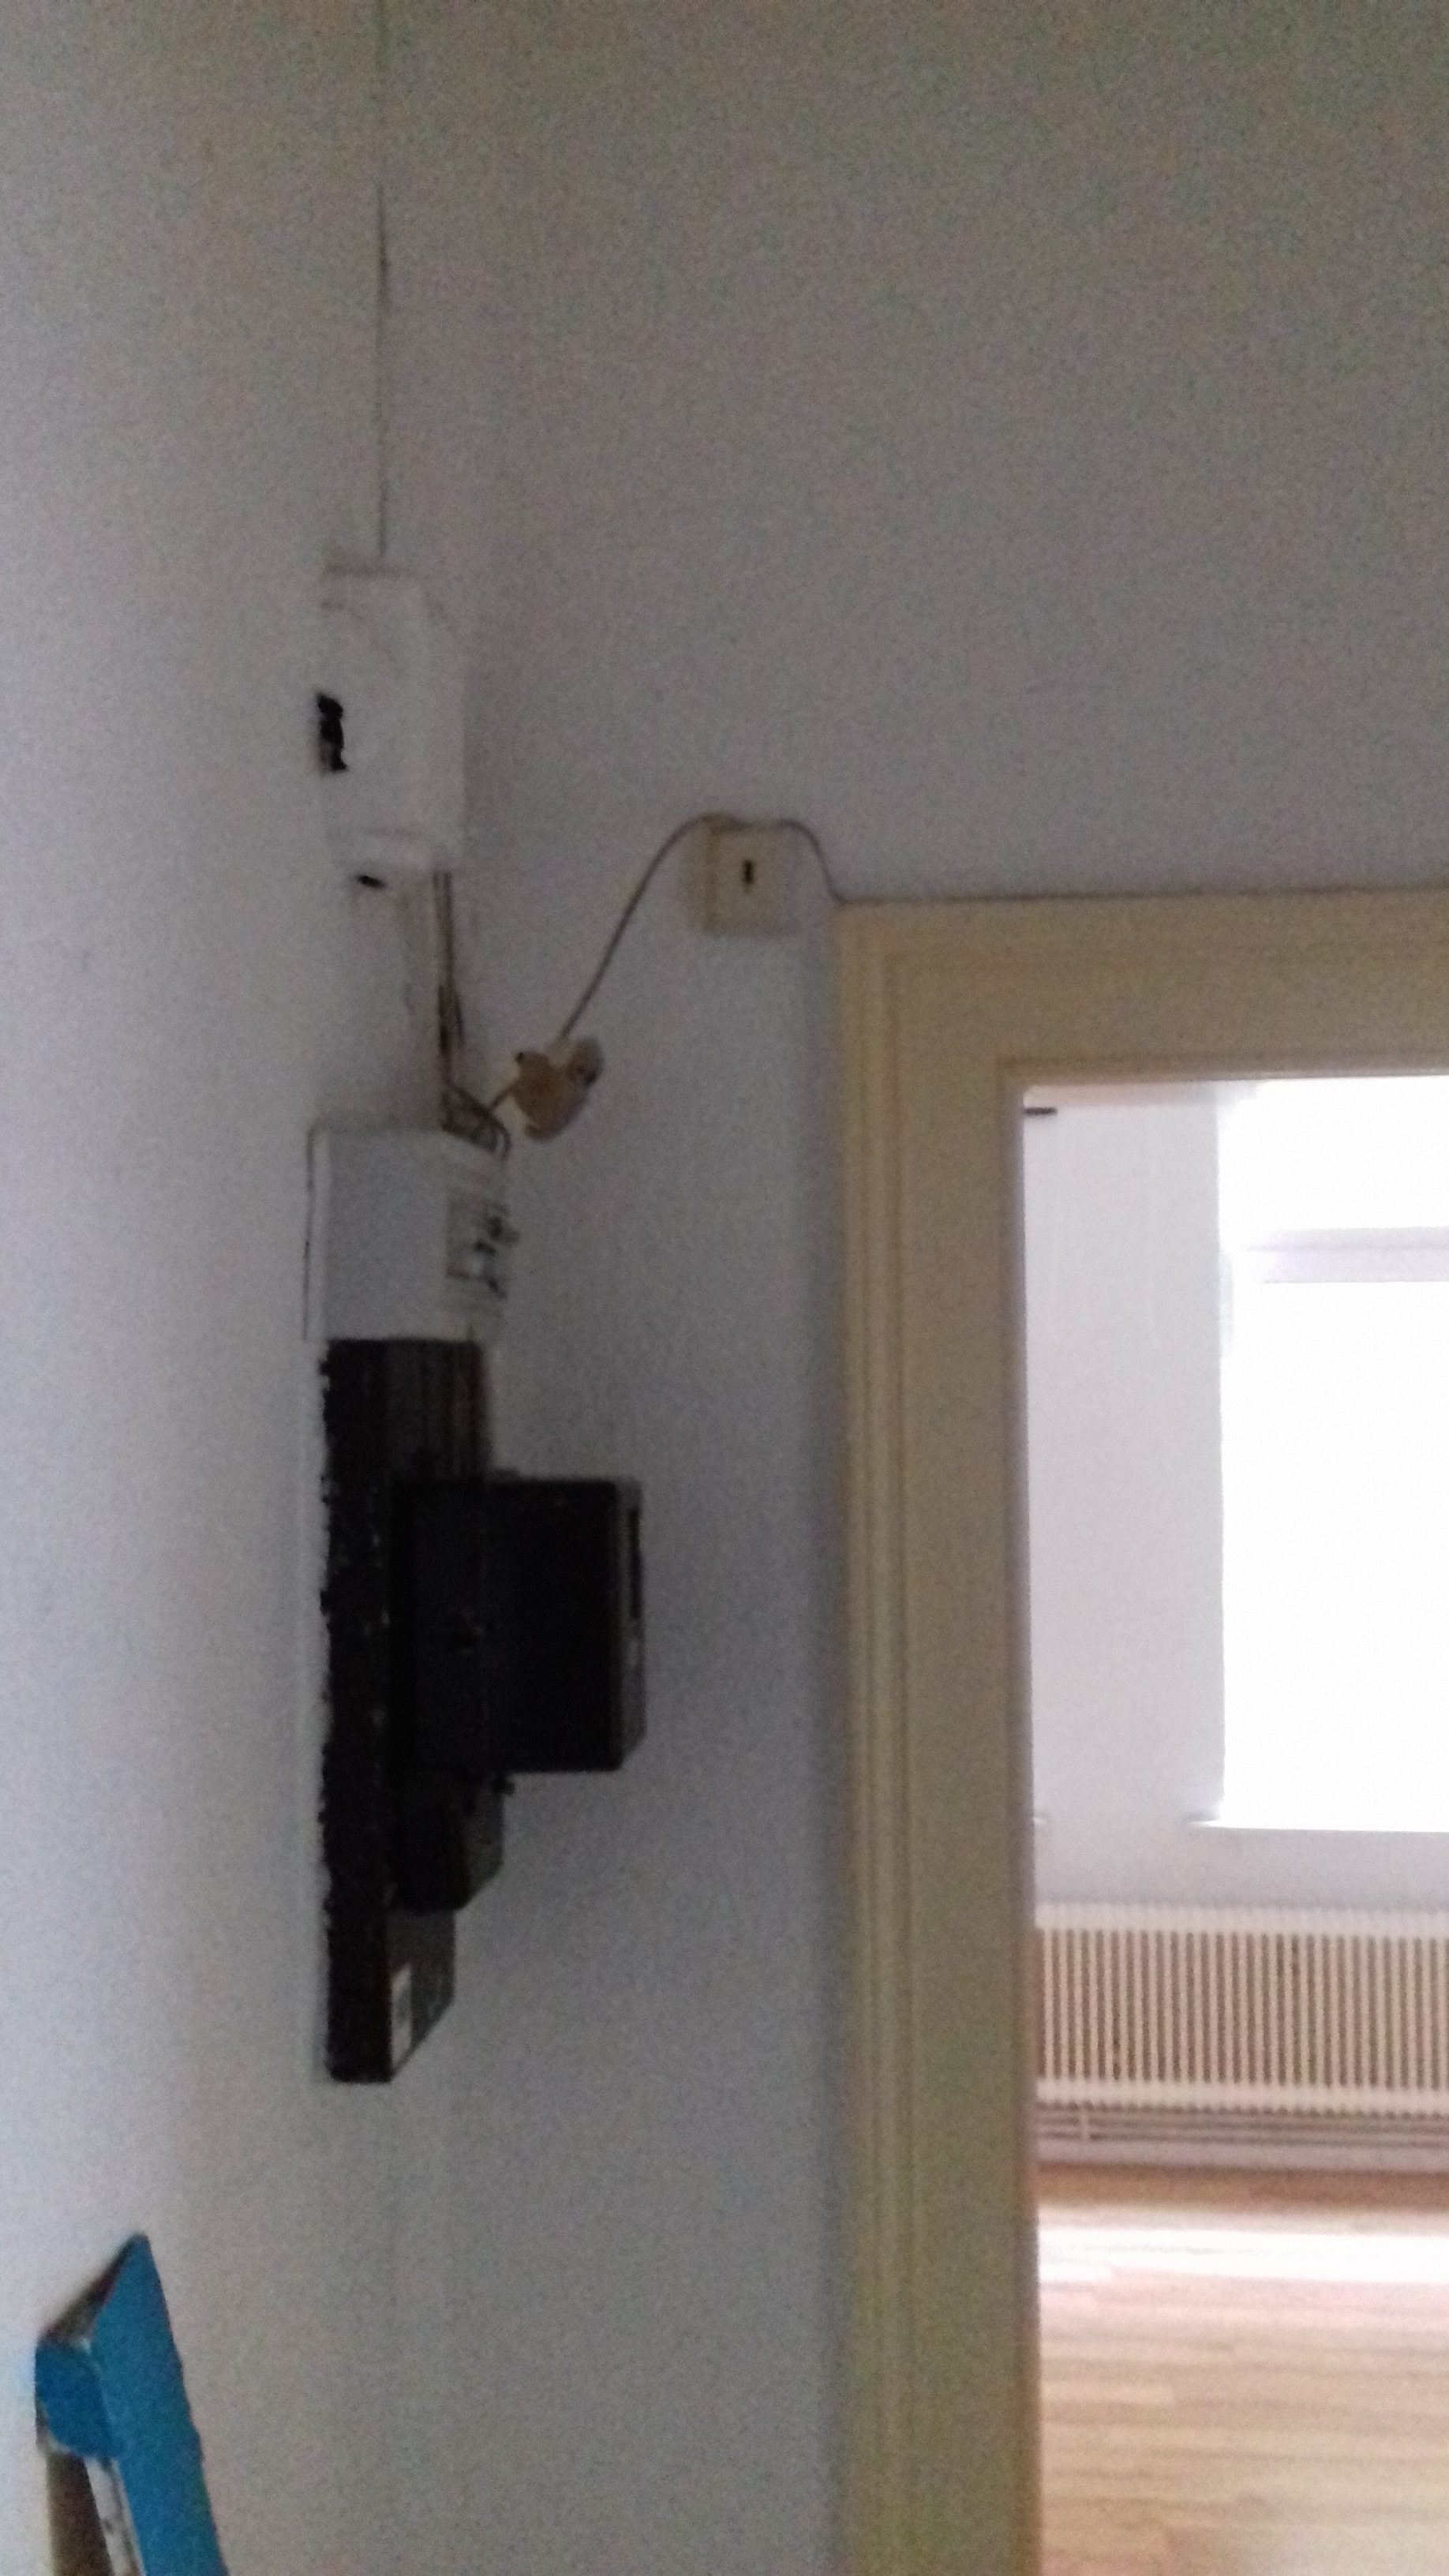 Ein Türrahmen, wo der Telefonanschluß unter der Decke angebracht und verdrahtet wurde.